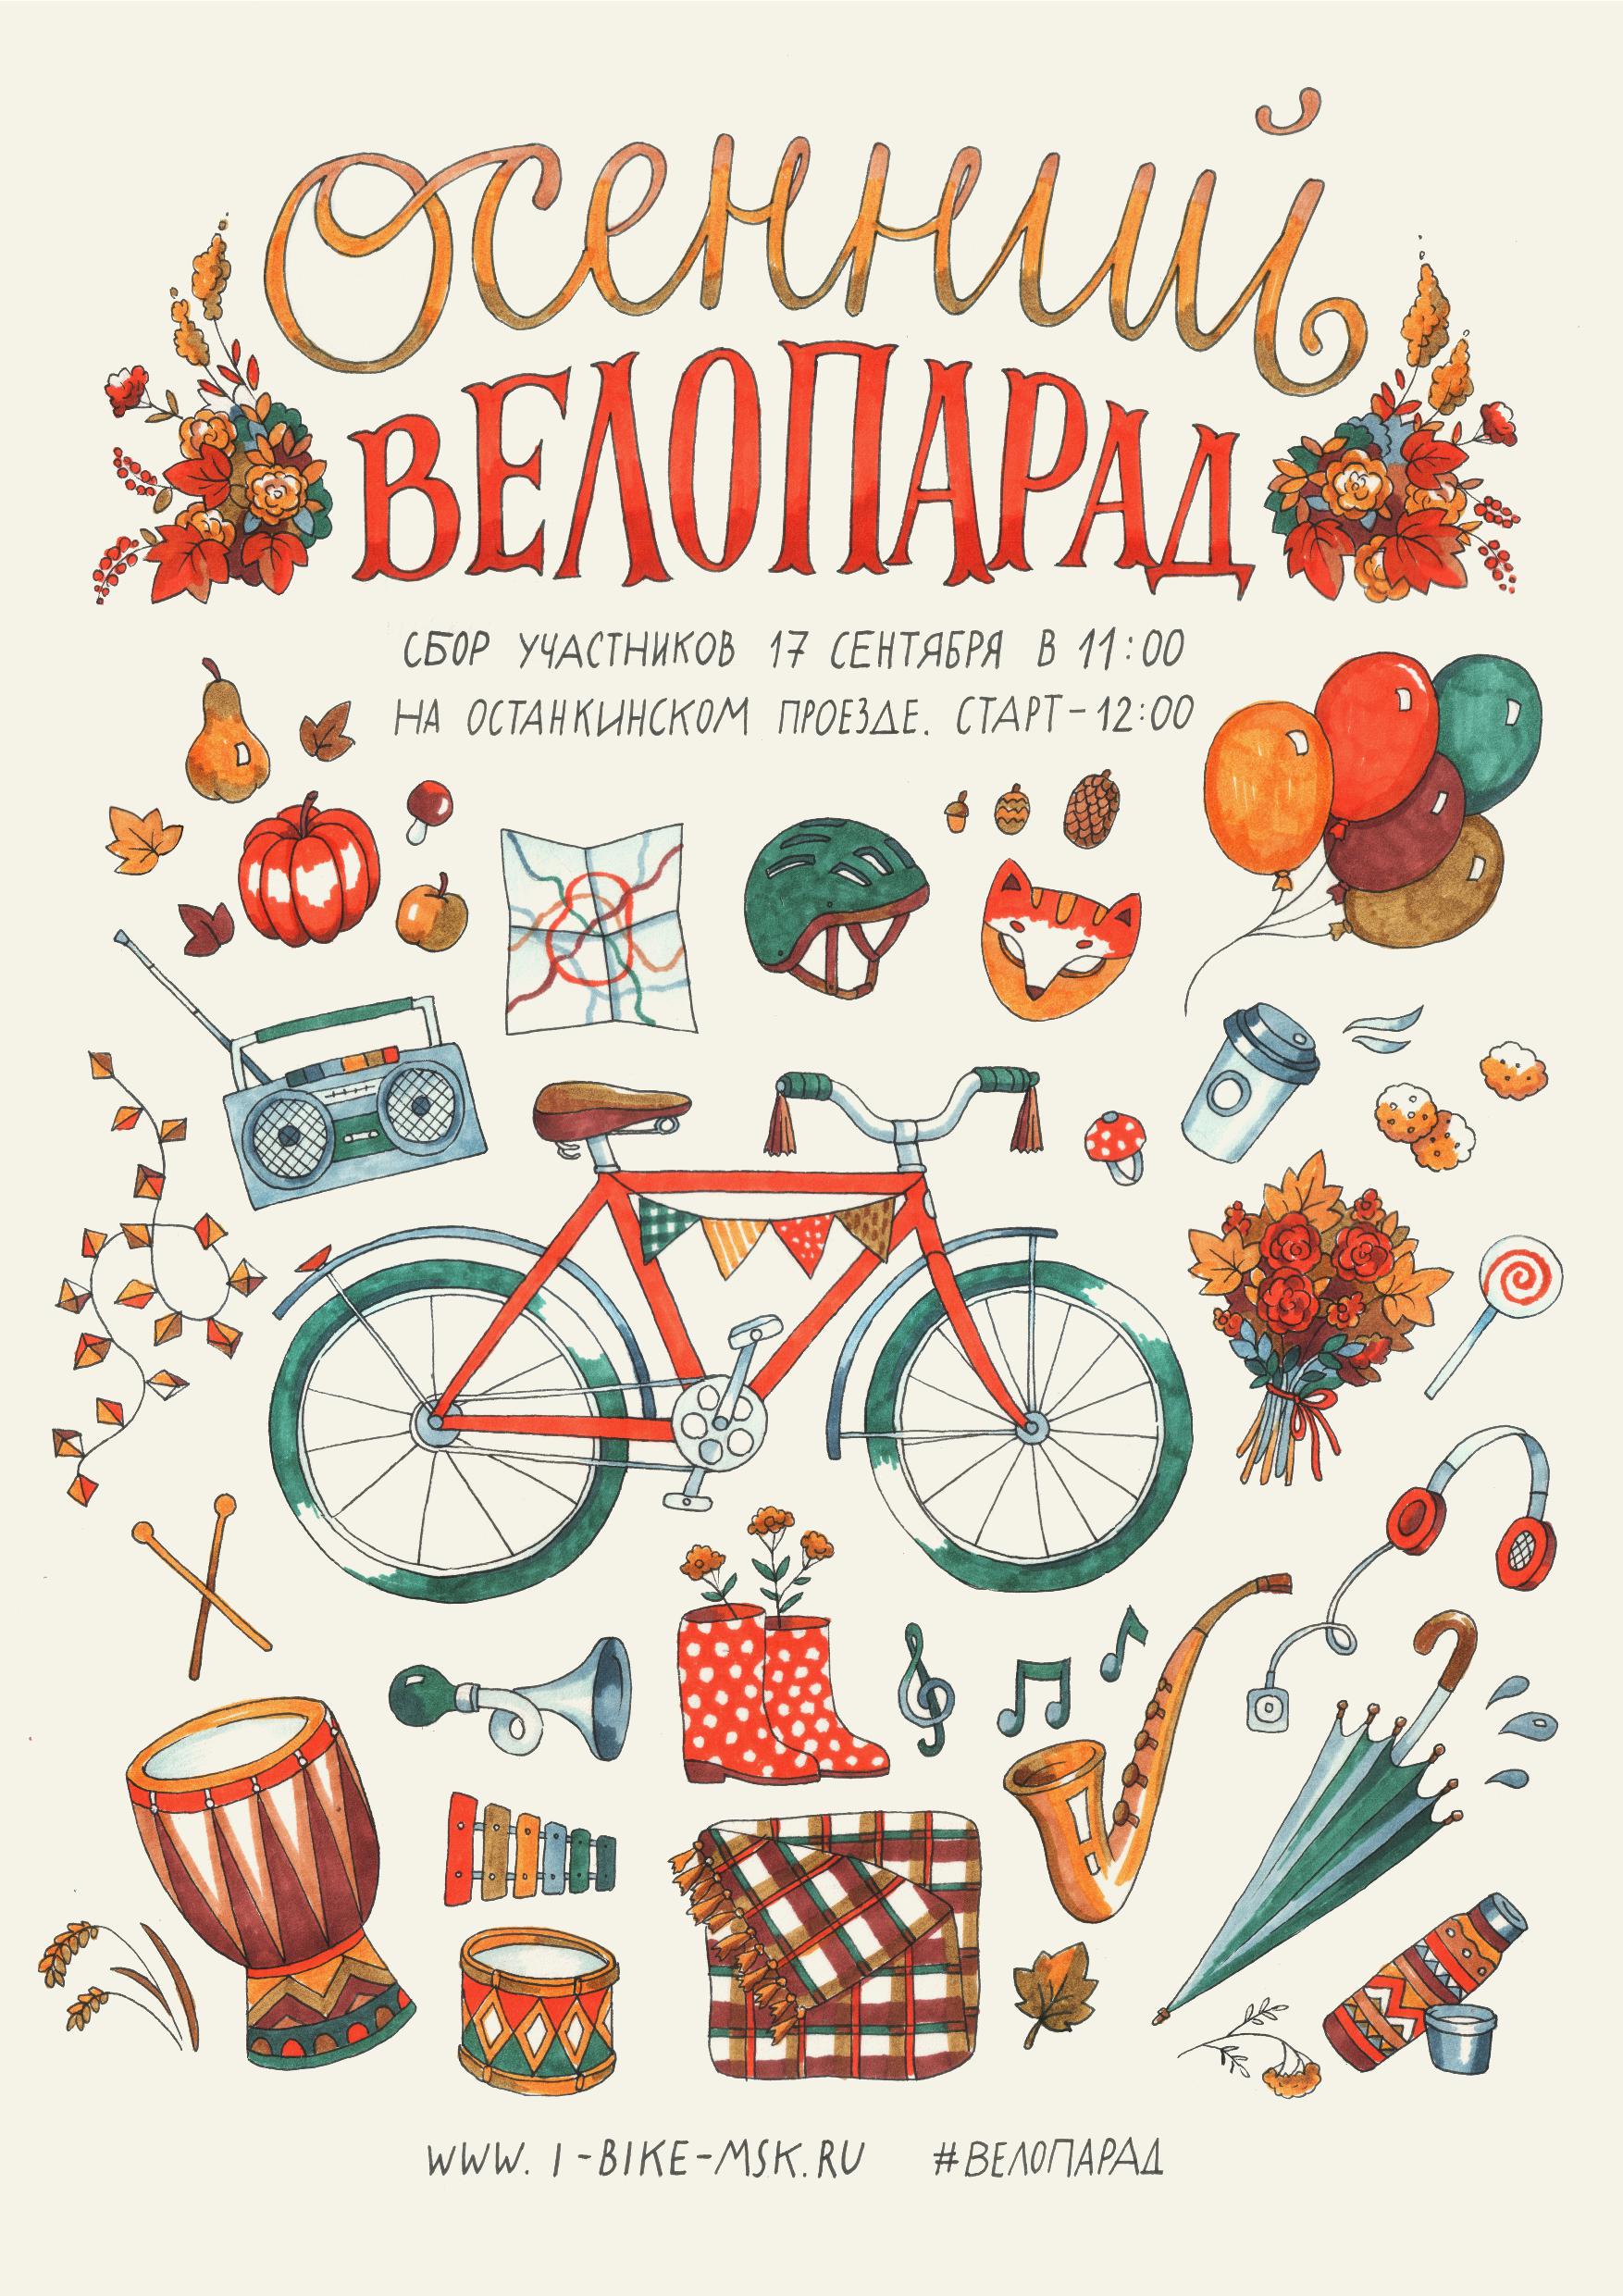 В воскресенье, 17 сентября 2017 года состоится осенний Московский Велопарад. Присоединяйтесь, чтобы показать, что городу нужна удобная велоинфраструктура! 